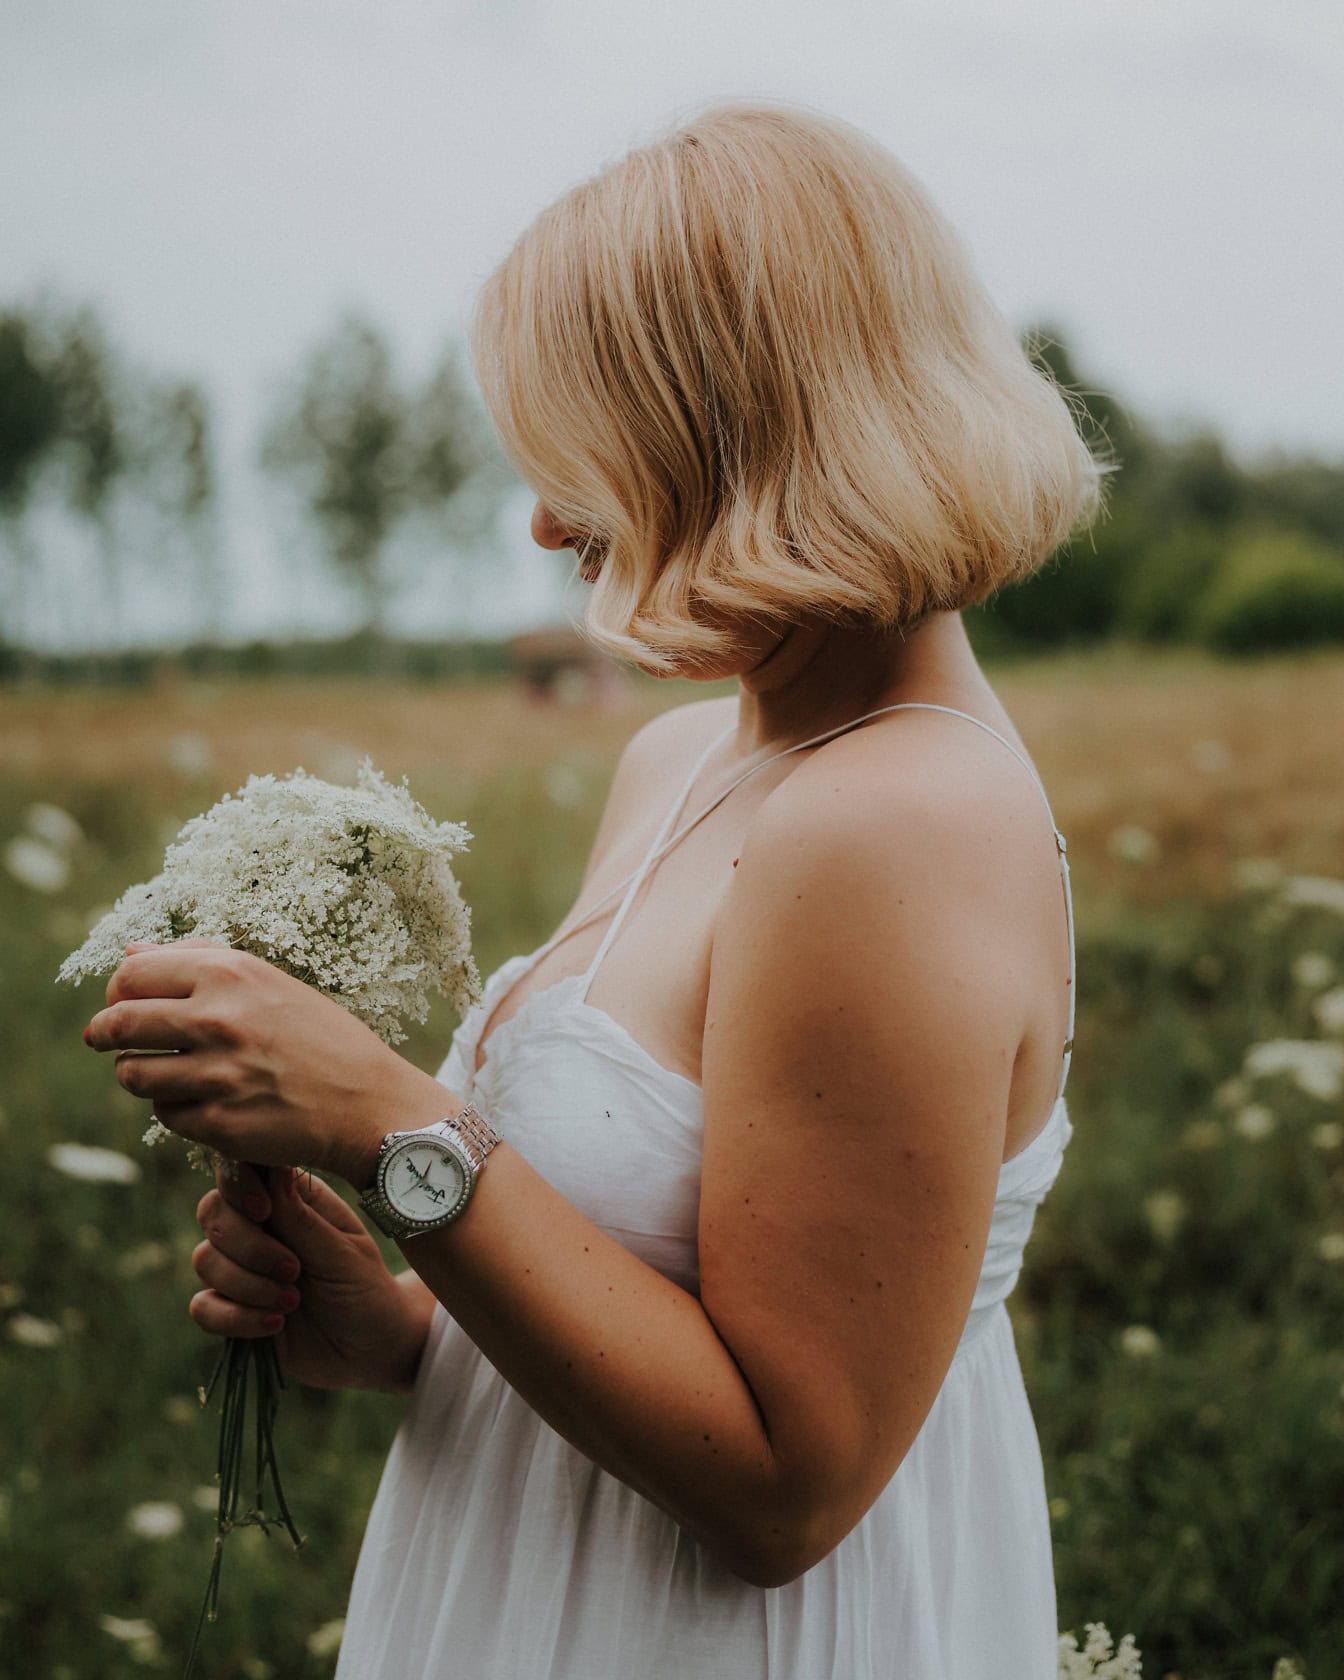 ภาพมุมมองด้านข้างของผู้หญิงผมบลอนด์ในชุดสไตล์คันทรีสีขาวถือช่อดอกไม้ป่าสีขาว